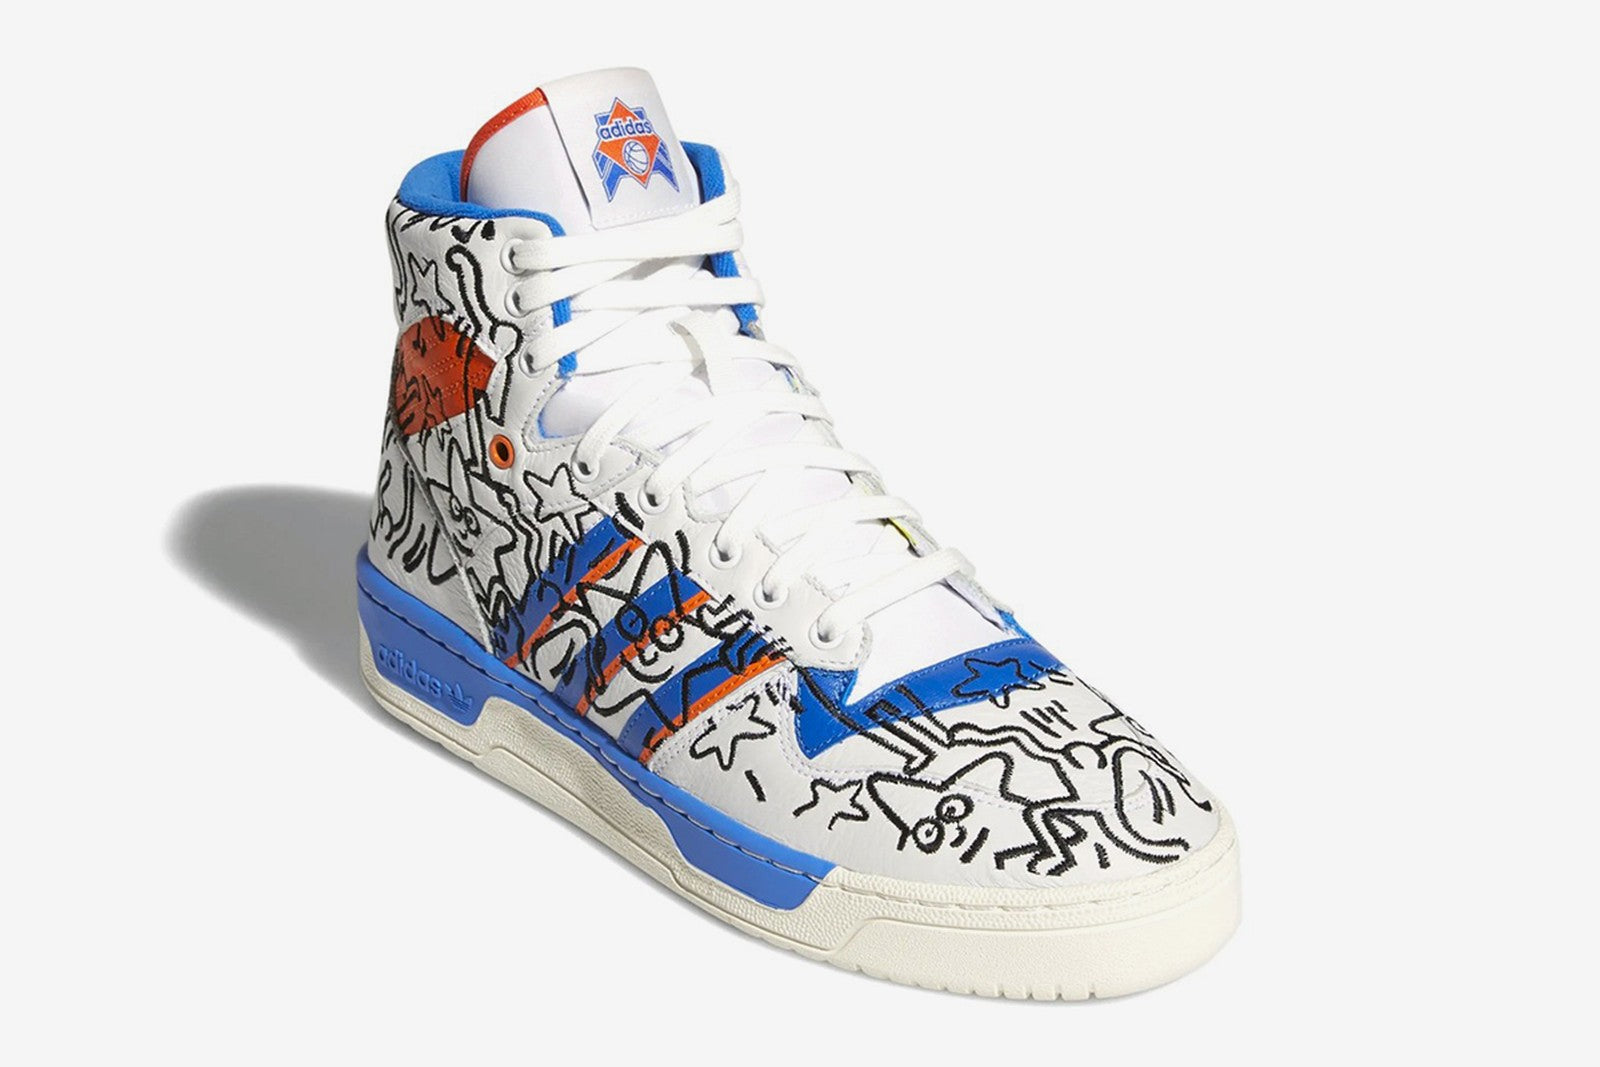 Keith Haring x Adidas